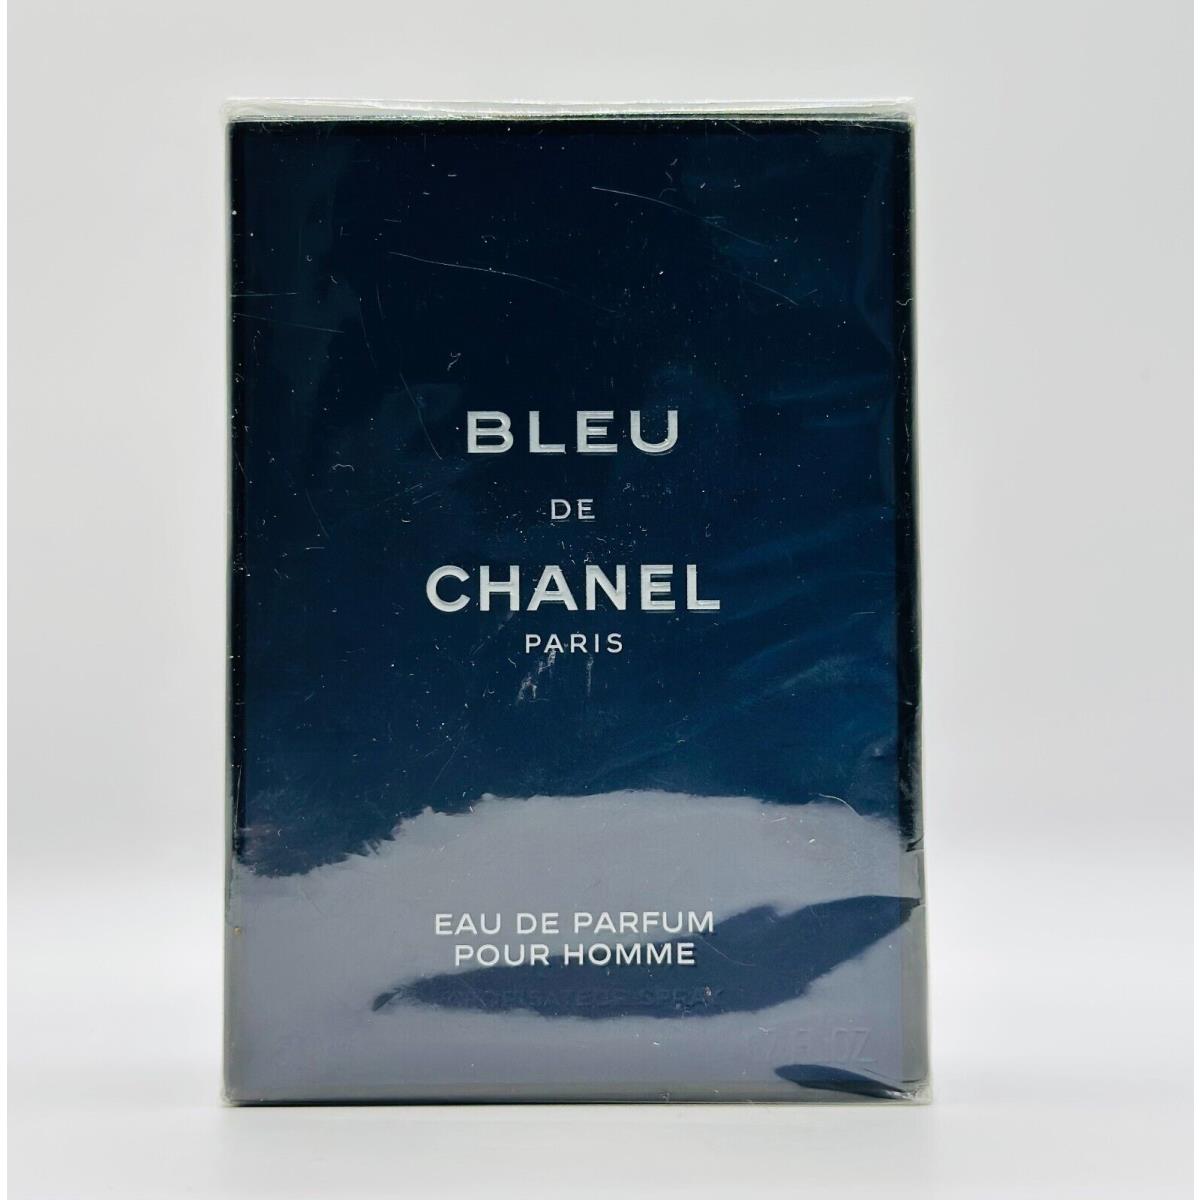 Bleu de Chanel Paris Edp Pour Homme 50ml 1.7oz